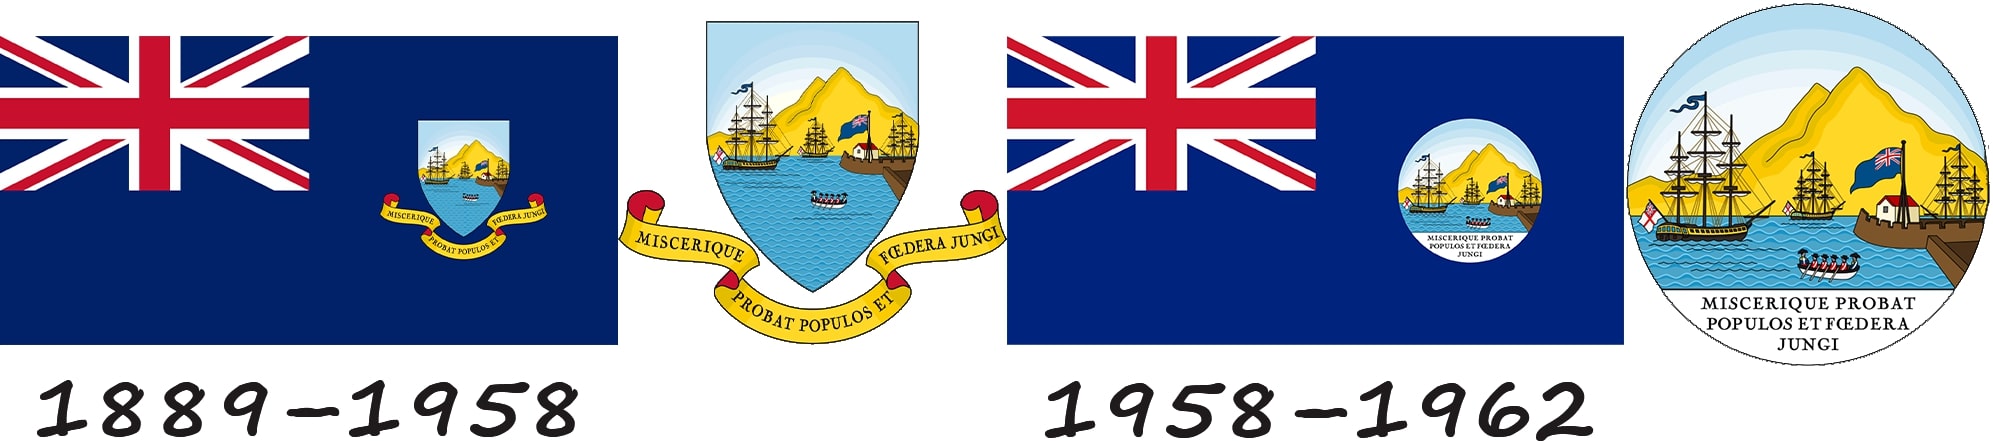 Історія прапору Тринідаду і Тобаго